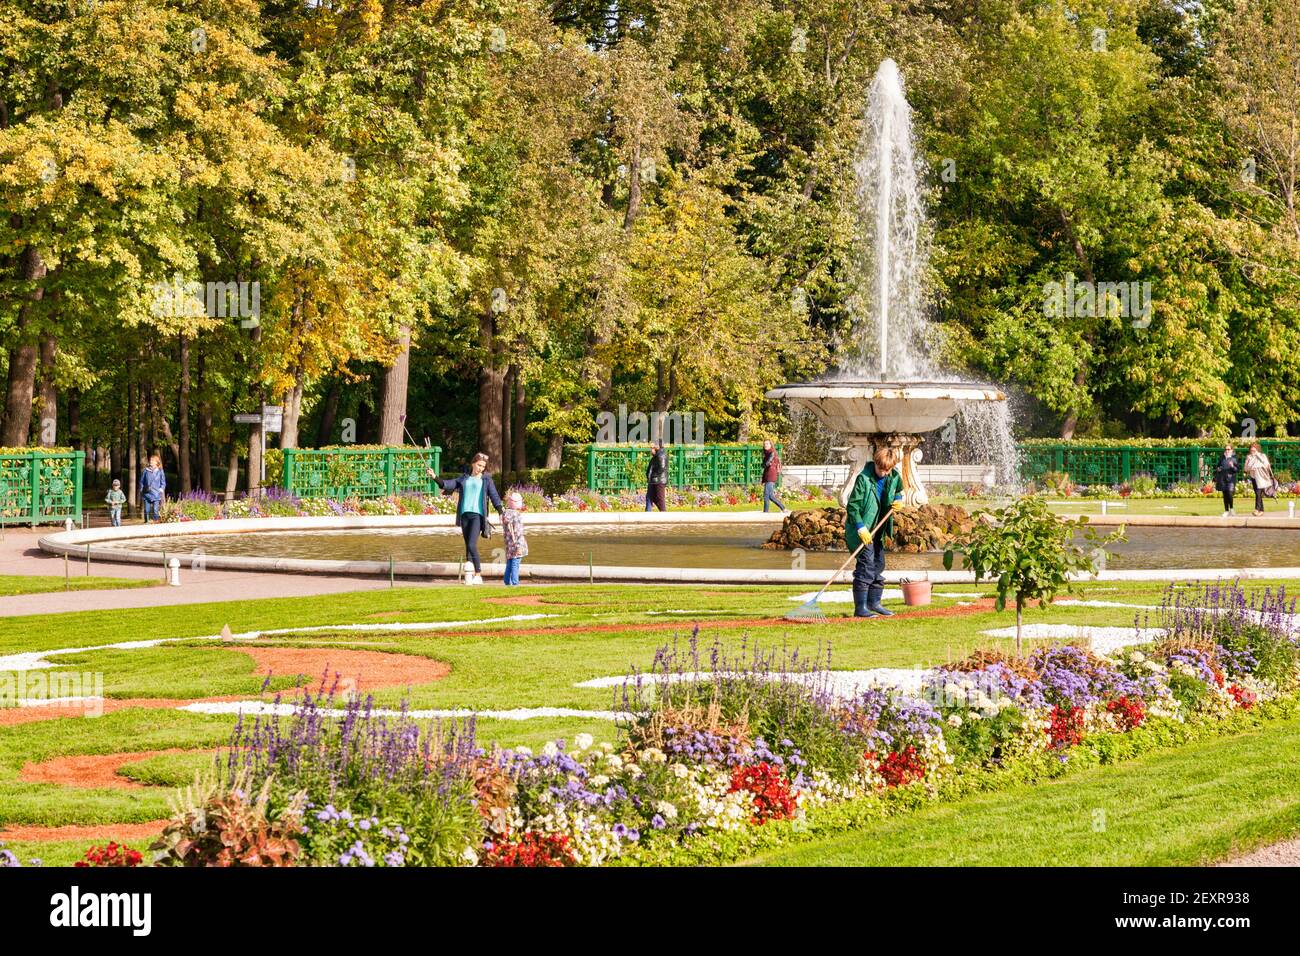 18 septembre 2018: St Petersburg, Russie - Gardener raking gravier dans les jardins de la fontaine du palais de Peterhof, et les touristes observation. Les arbres se tournent vers Banque D'Images